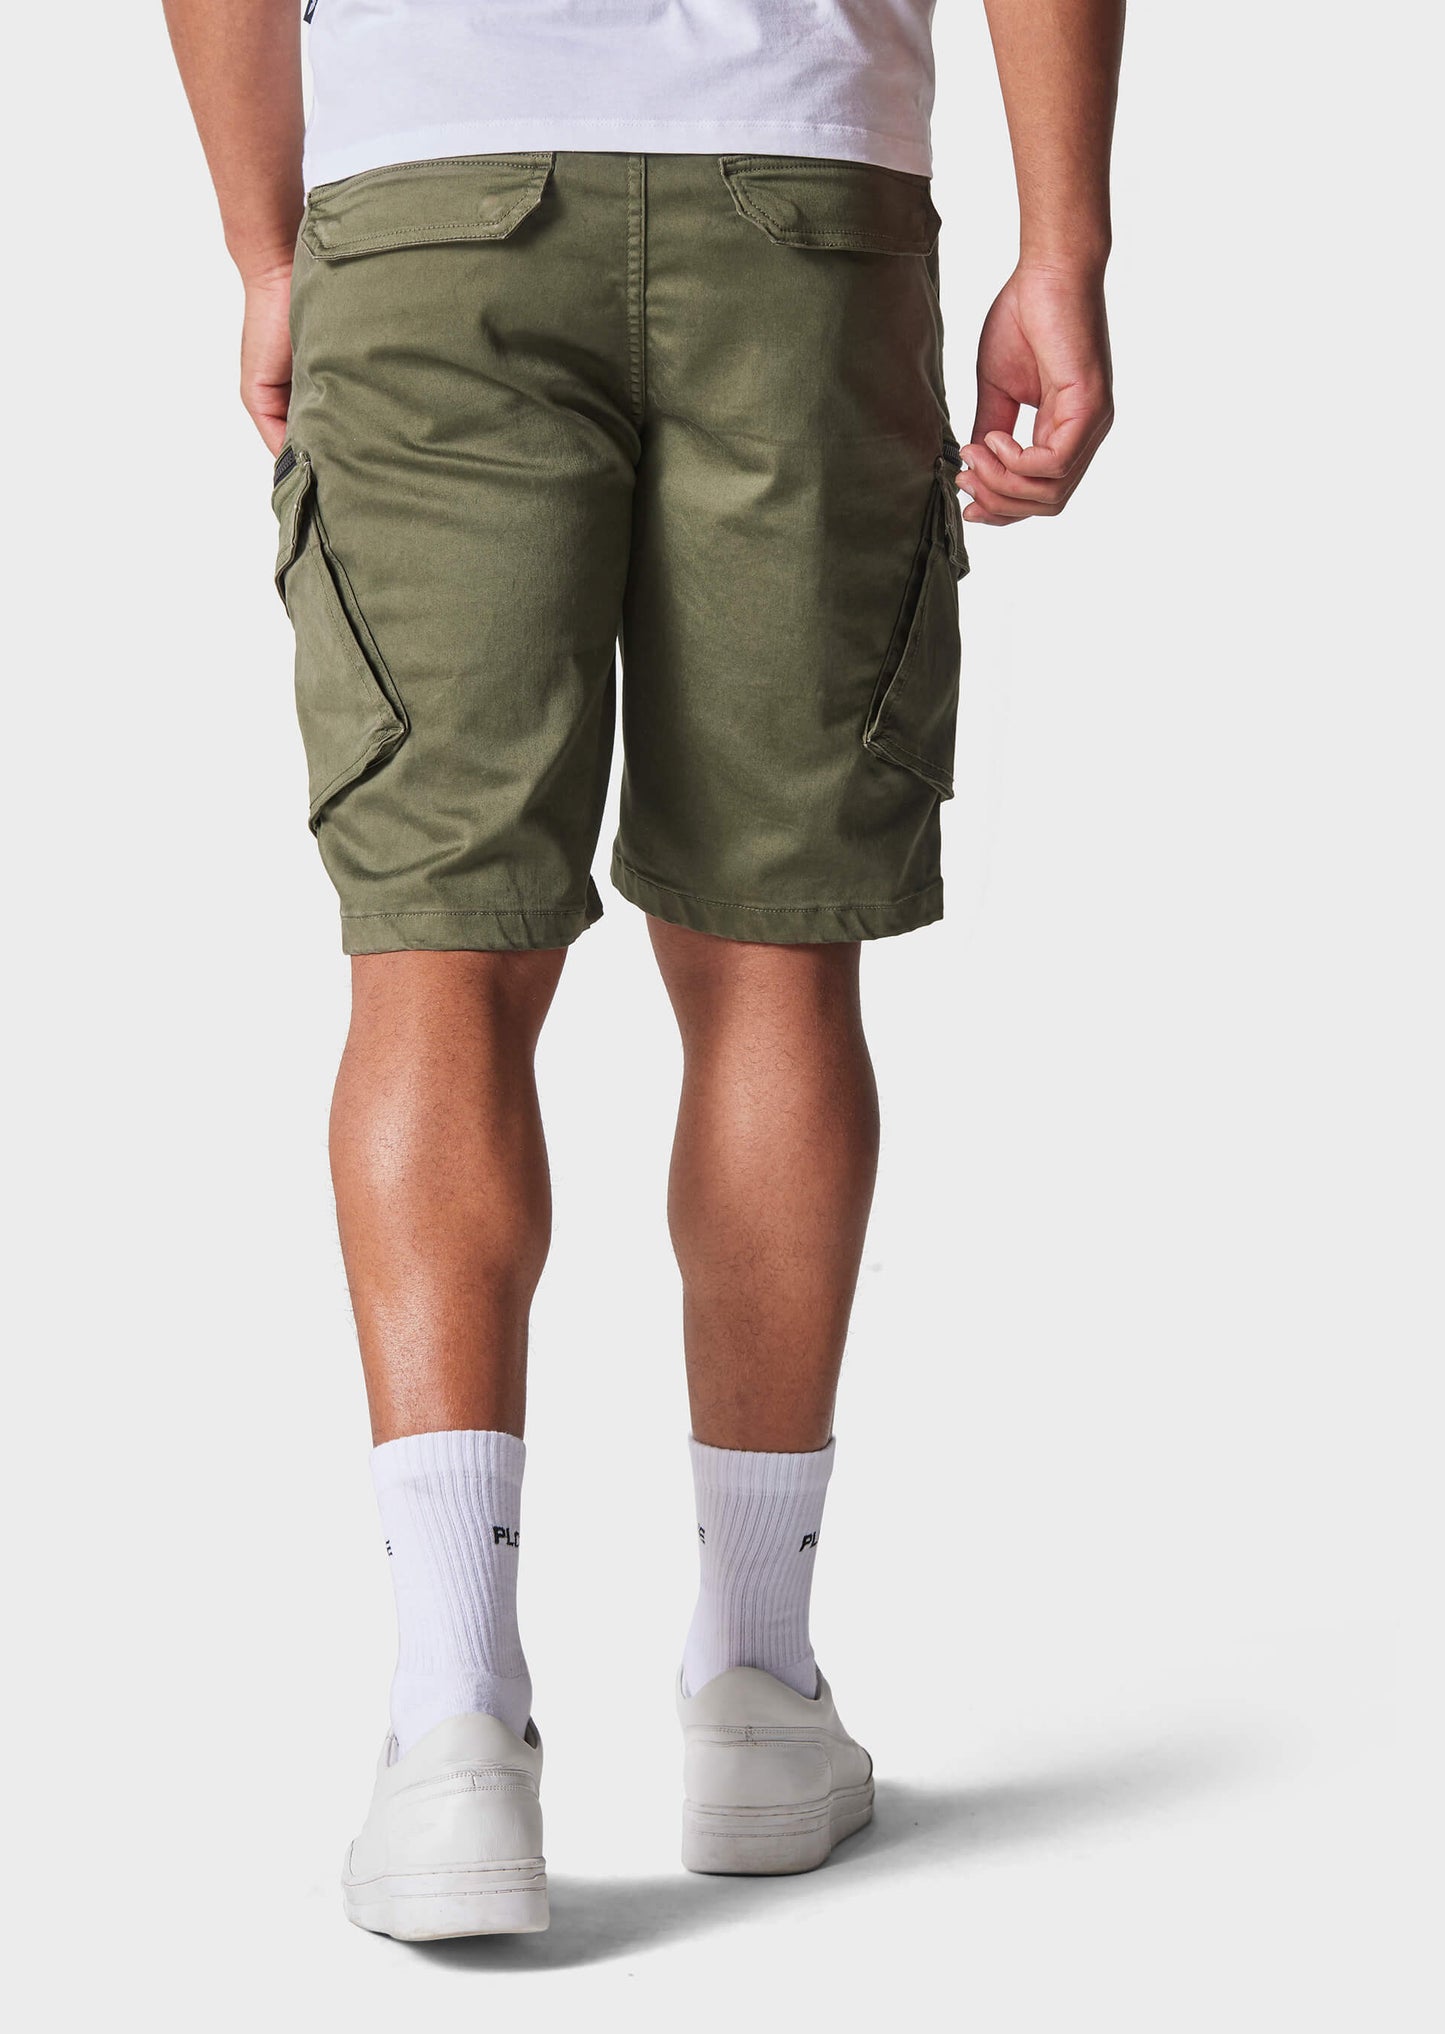 Doust Khaki Chino Shorts